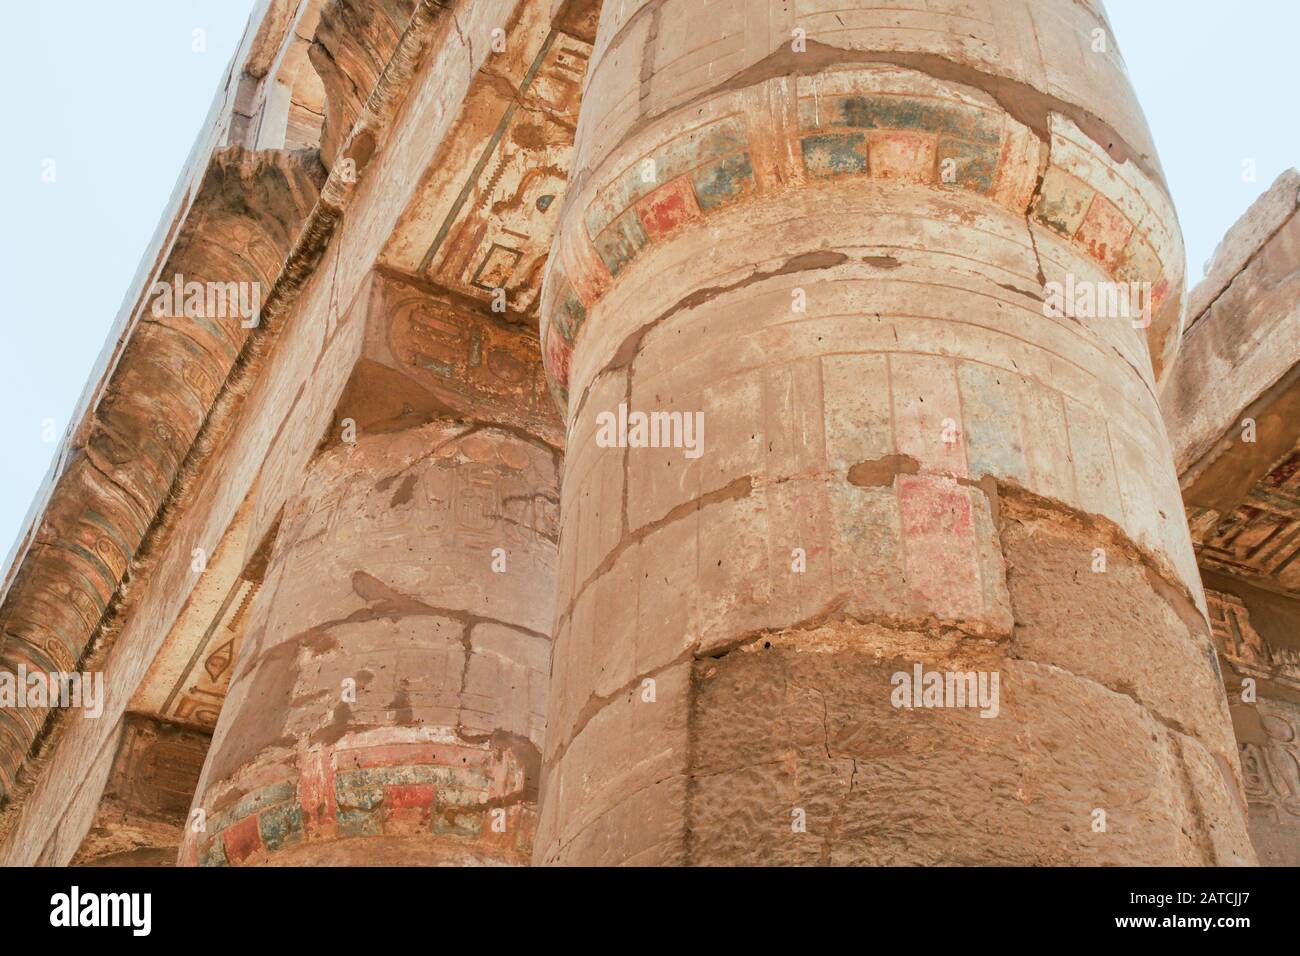 Luxor, Karnak, Egipto, África. Templo de Karnak. Buscando. Jeroglíficos pintados y tallados. Foto de stock